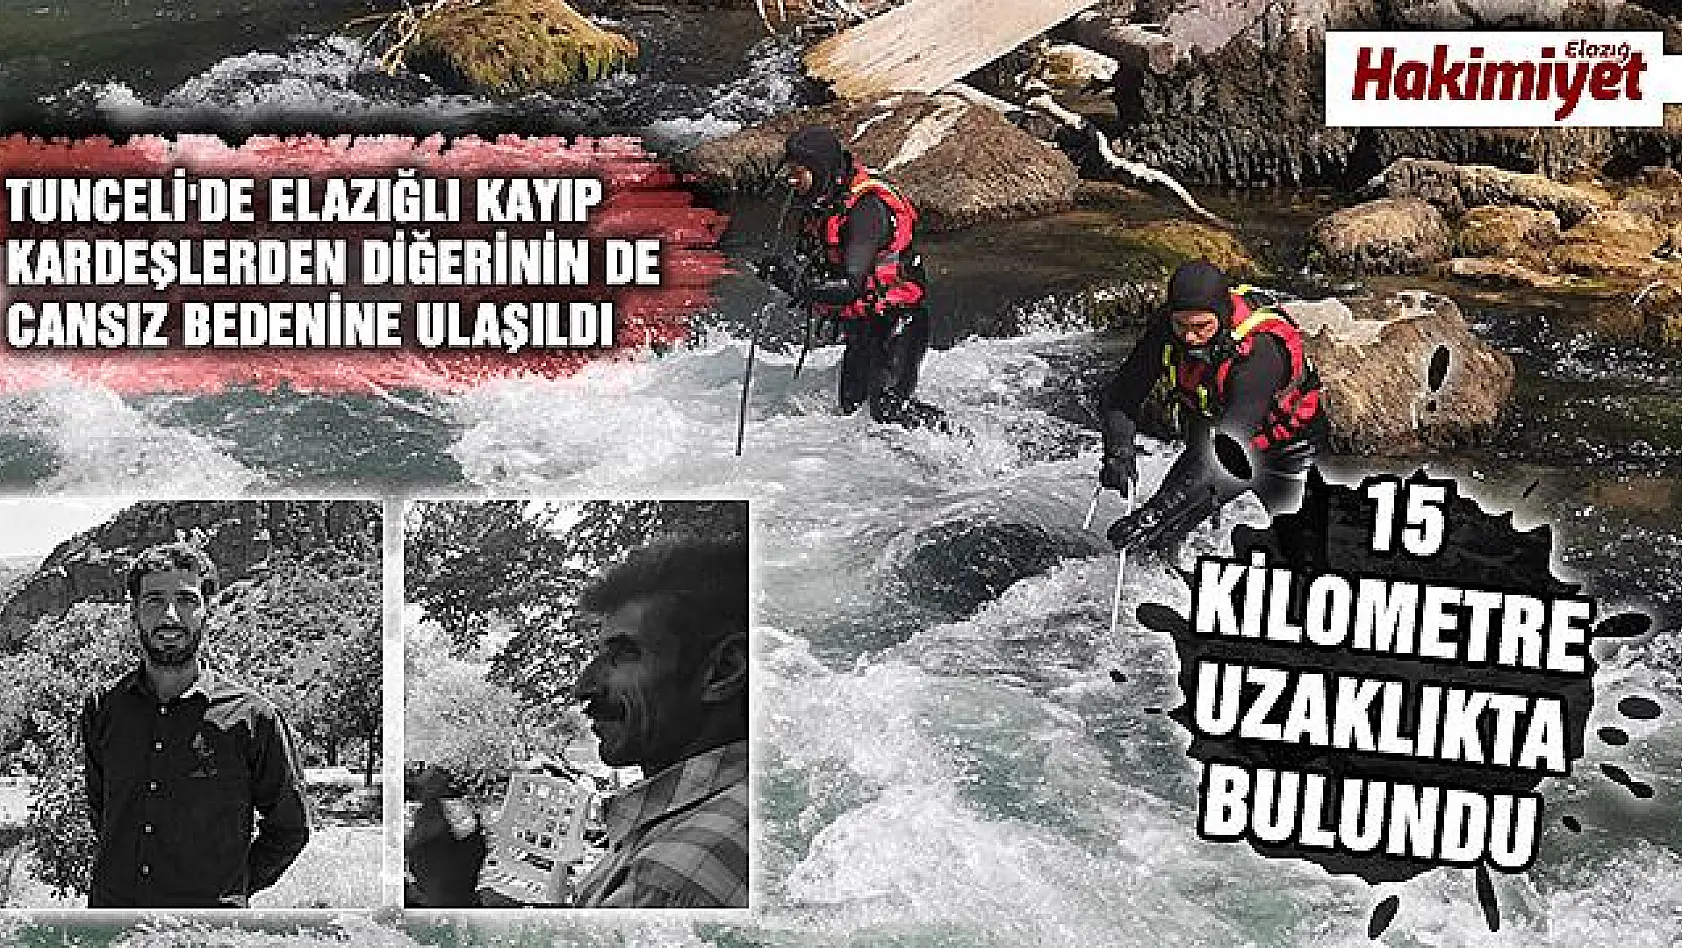  Tunceli'de kayıp kardeşin de cansız bedenine ulaşıldı